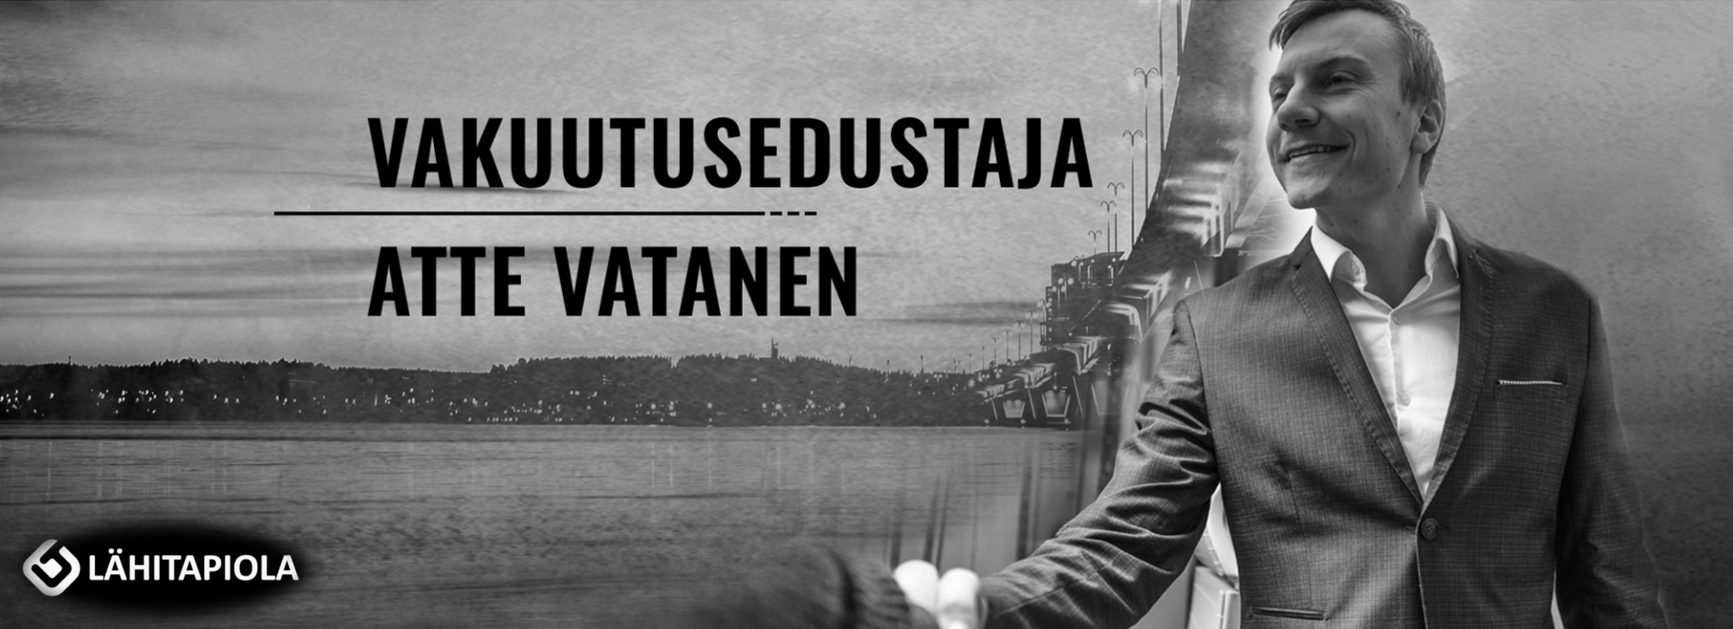 Atte Vatanen